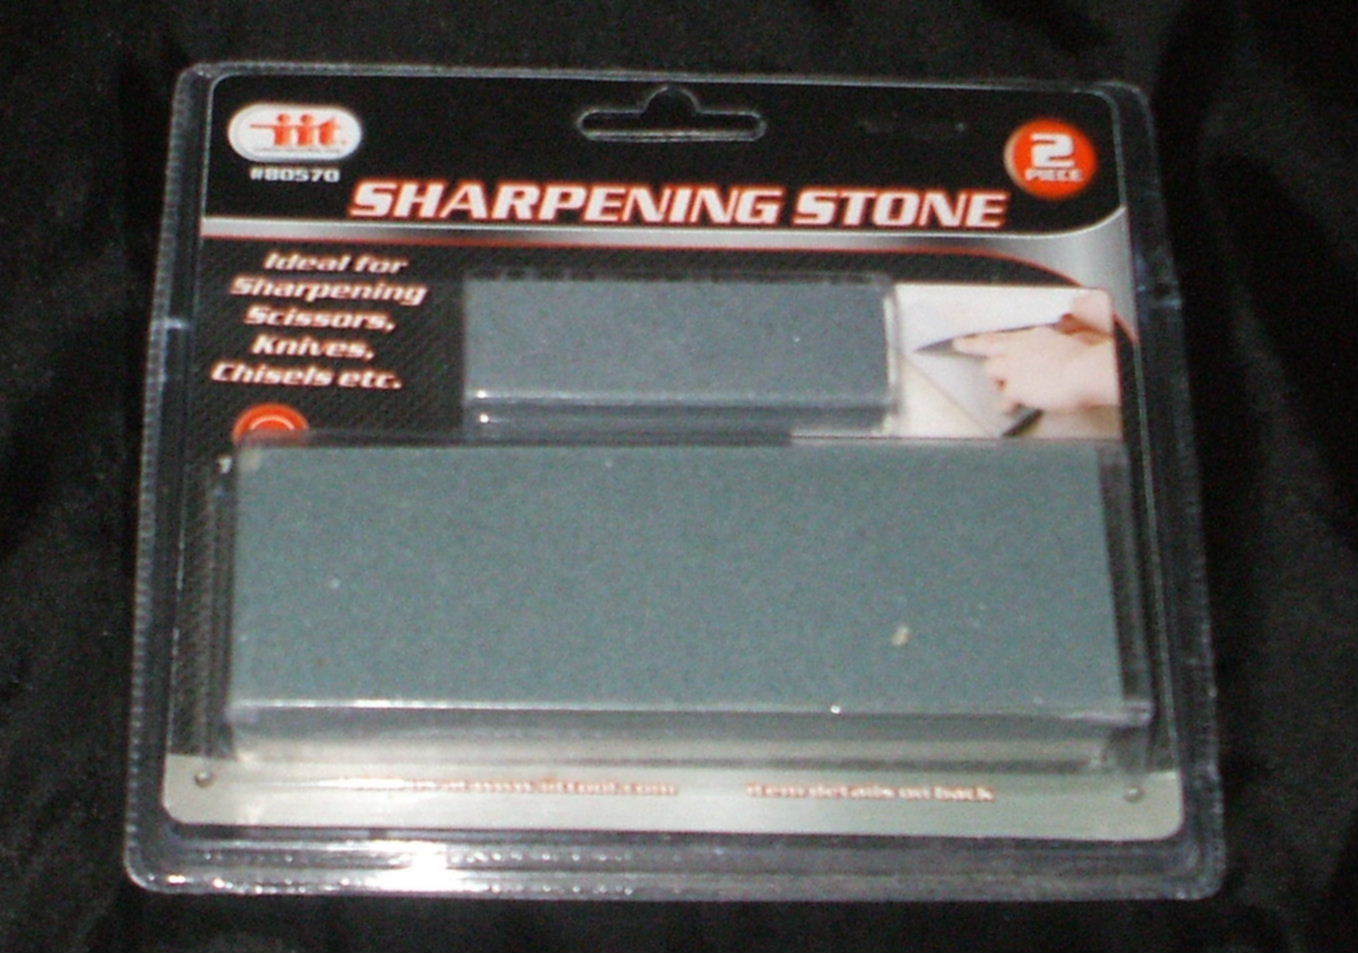 iit 80570 Sharpening Stone 2-Piece NEW NIP Sharpening Knives Scissors, etc